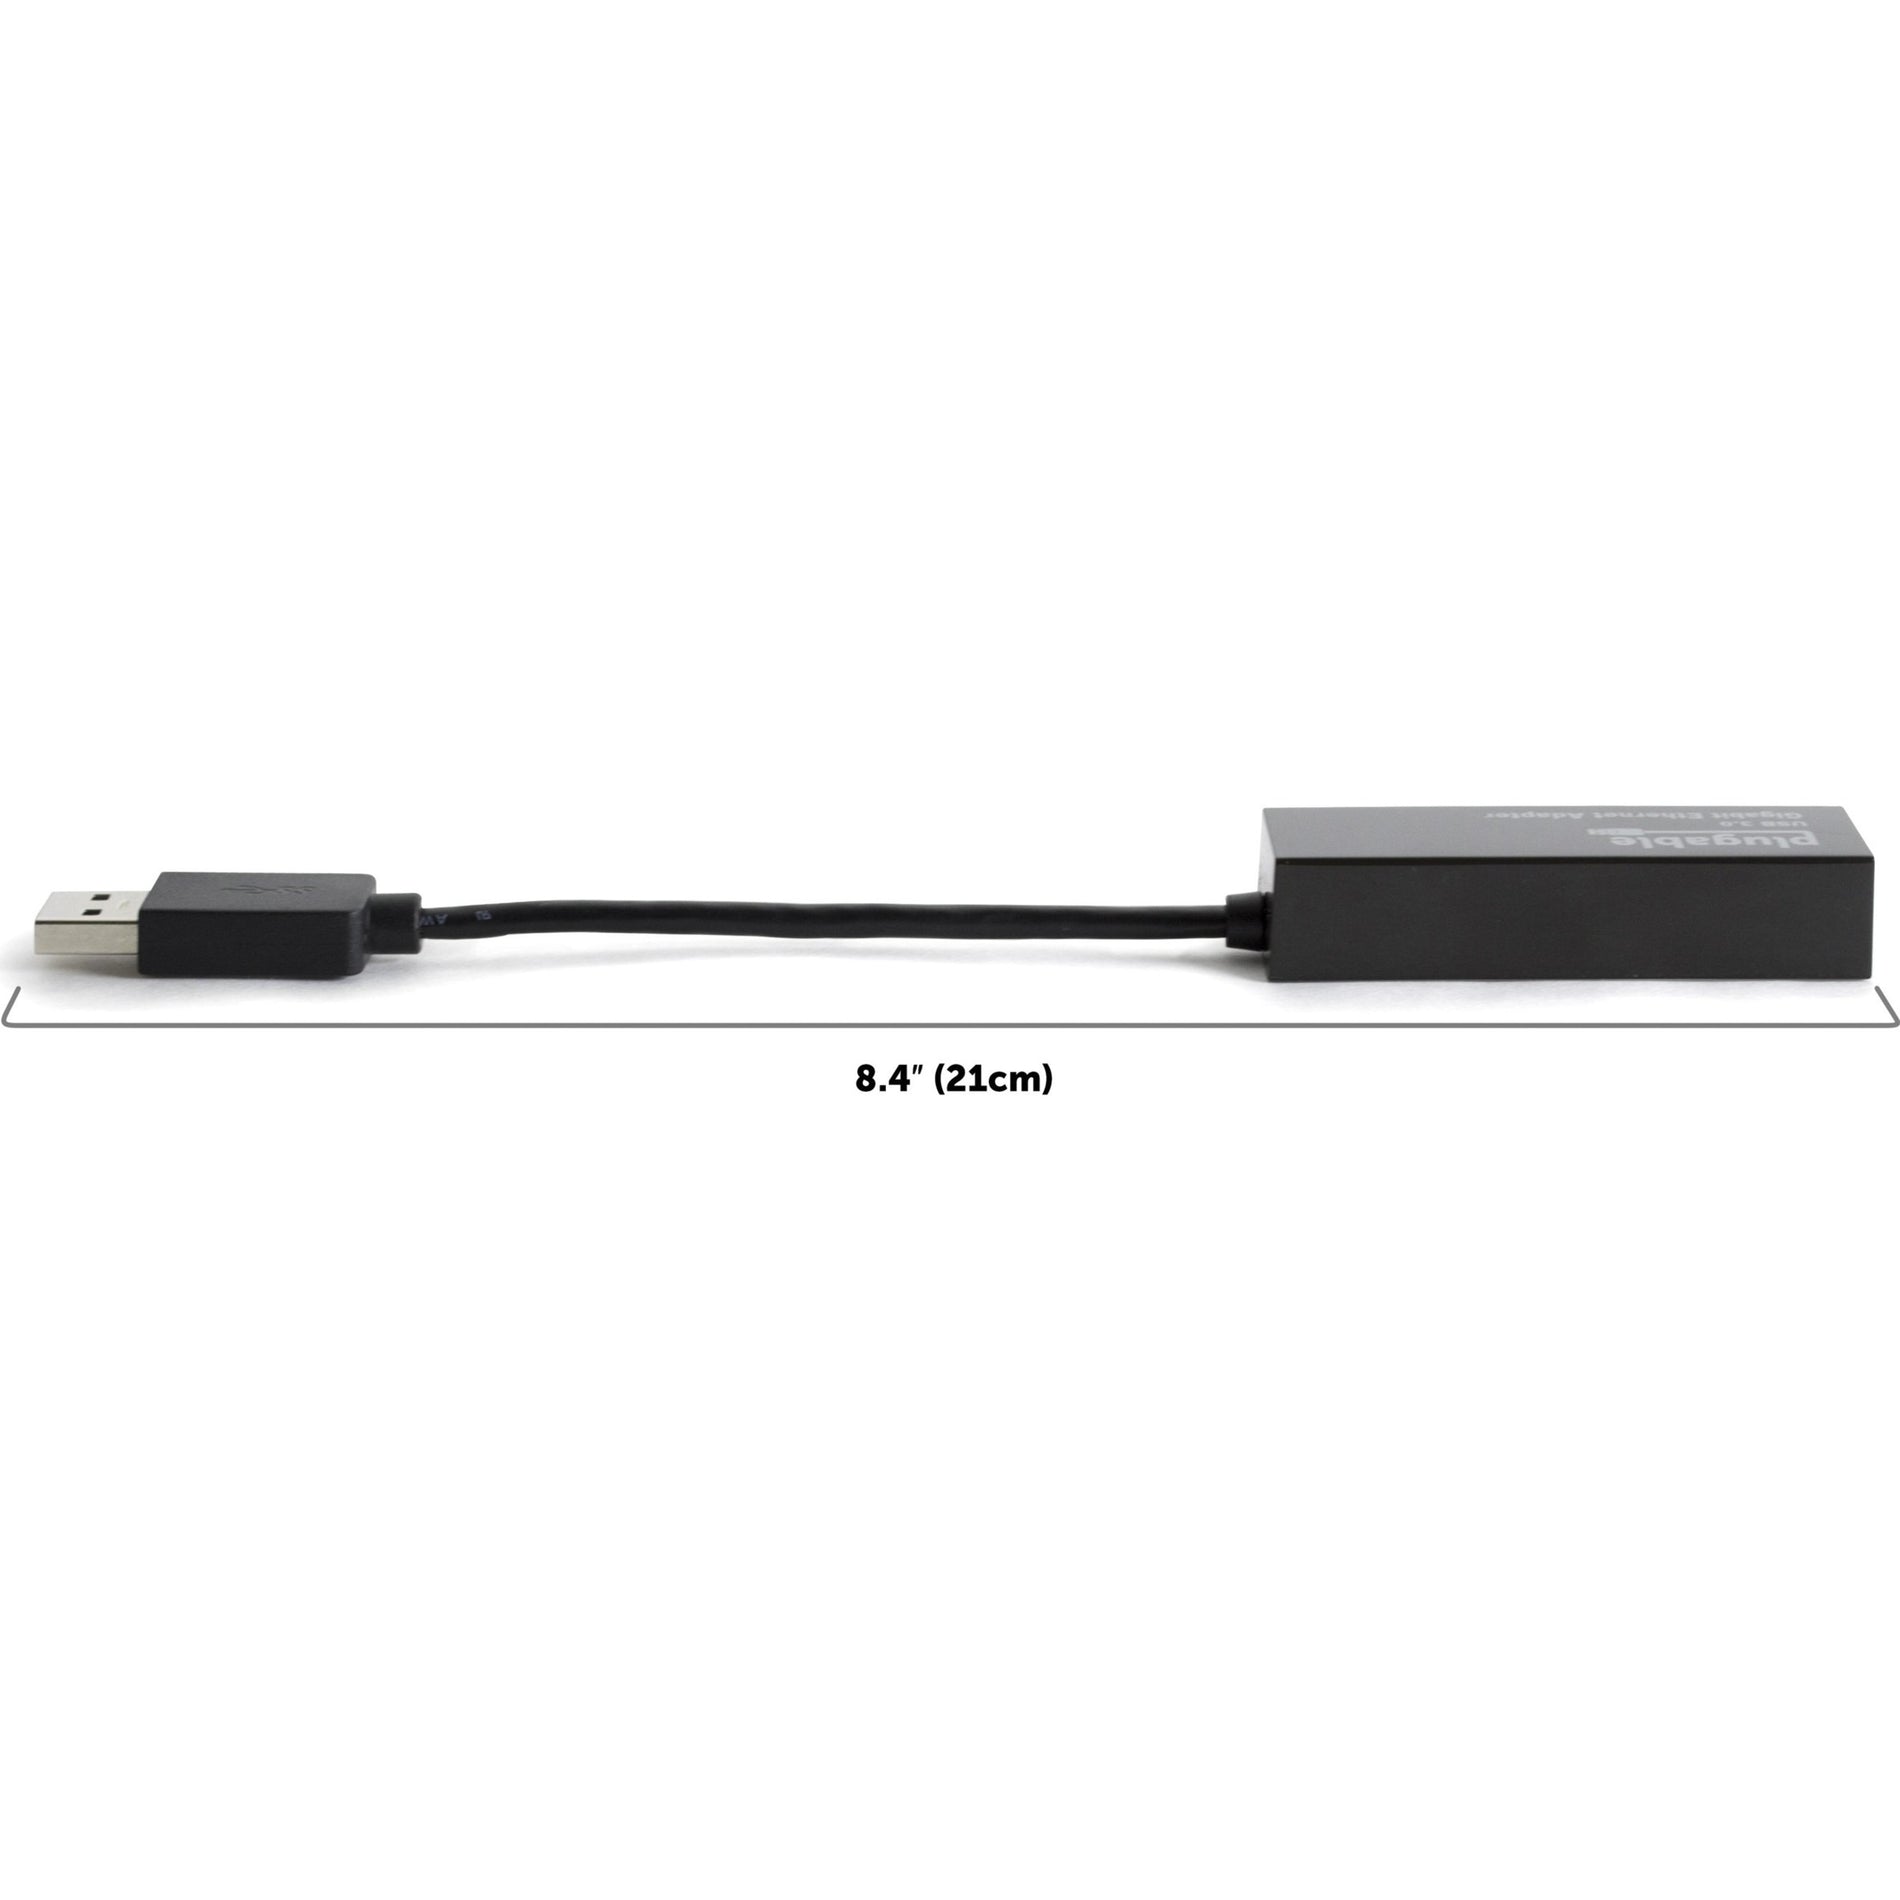 Adaptador de USB a Ethernet Plugable USB3-E1000 USB 3.0 a Ethernet Gigabit Transferencia de Datos de Alta Velocidad. Marca: Plugable.